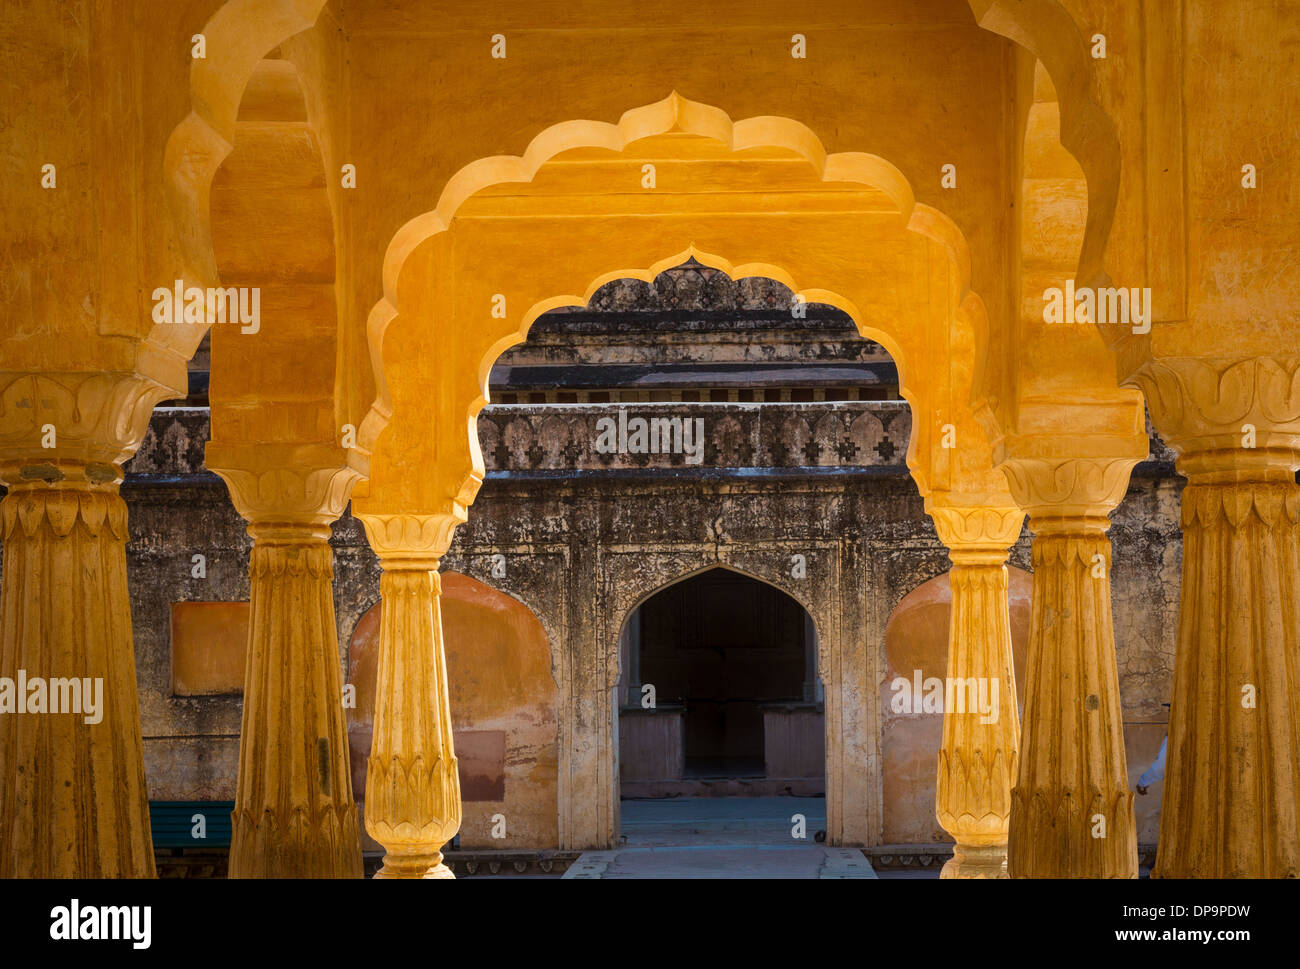 Fort Amer est situé à 6.8 km de Amer Jaipur, Rajasthan, Inde Banque D'Images